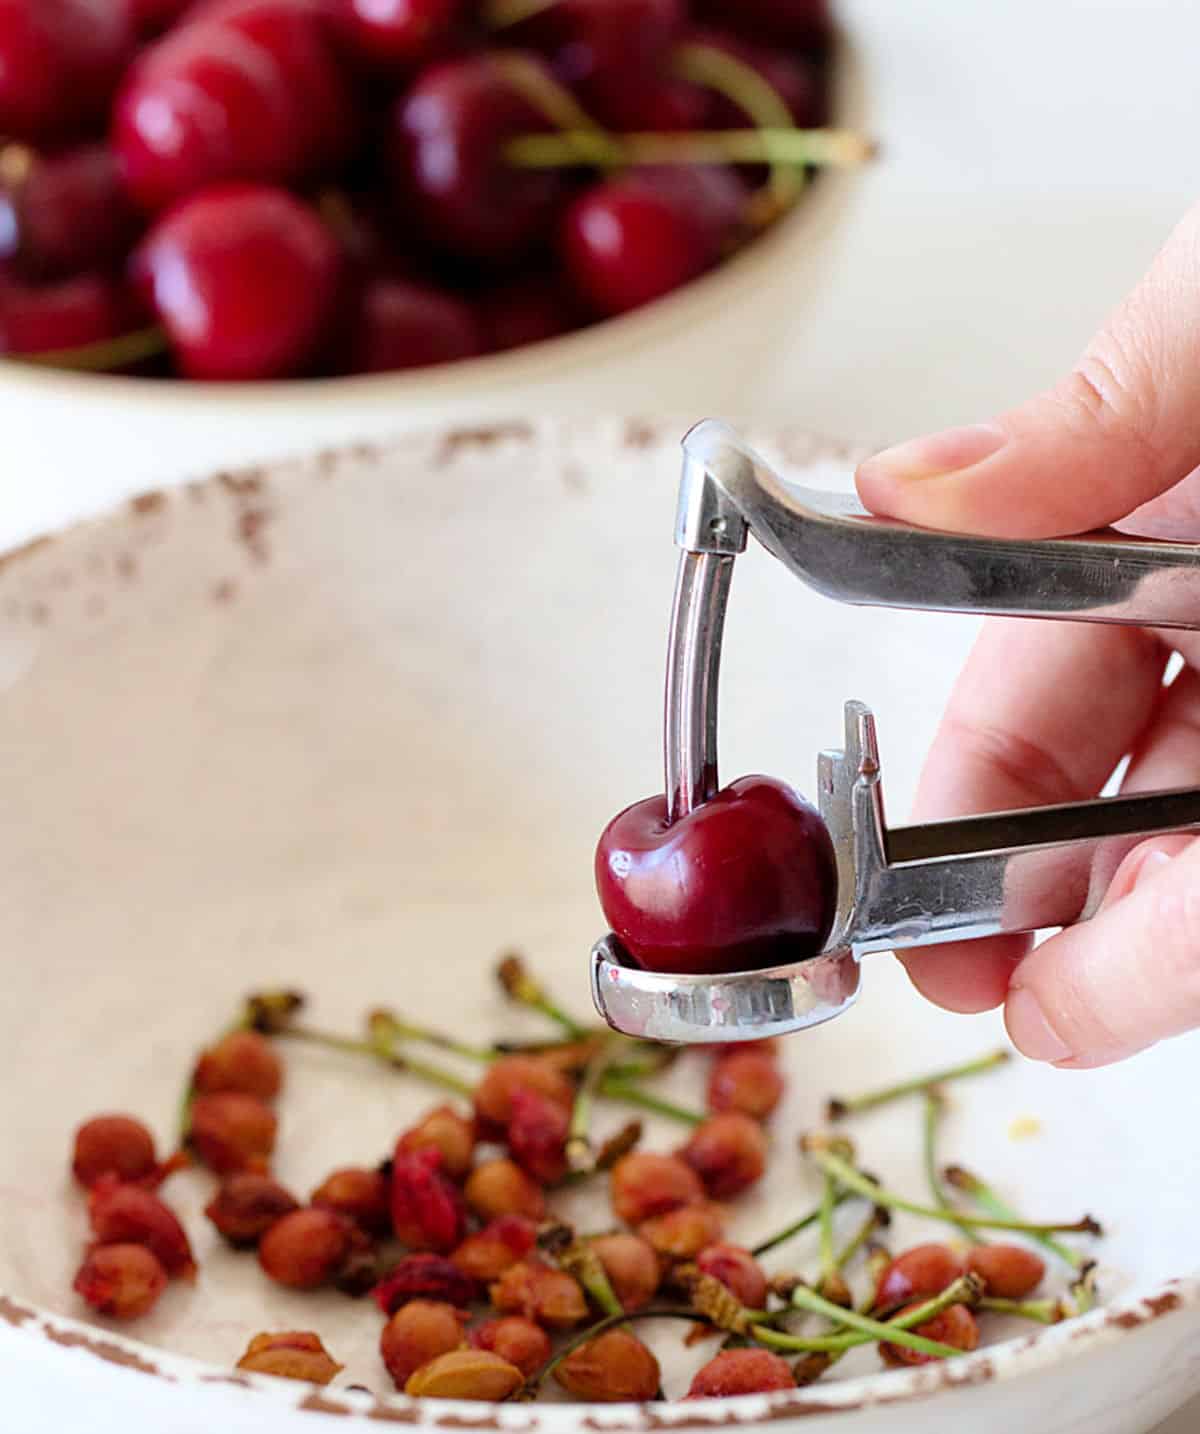 Hand pitting cherries over white bowl